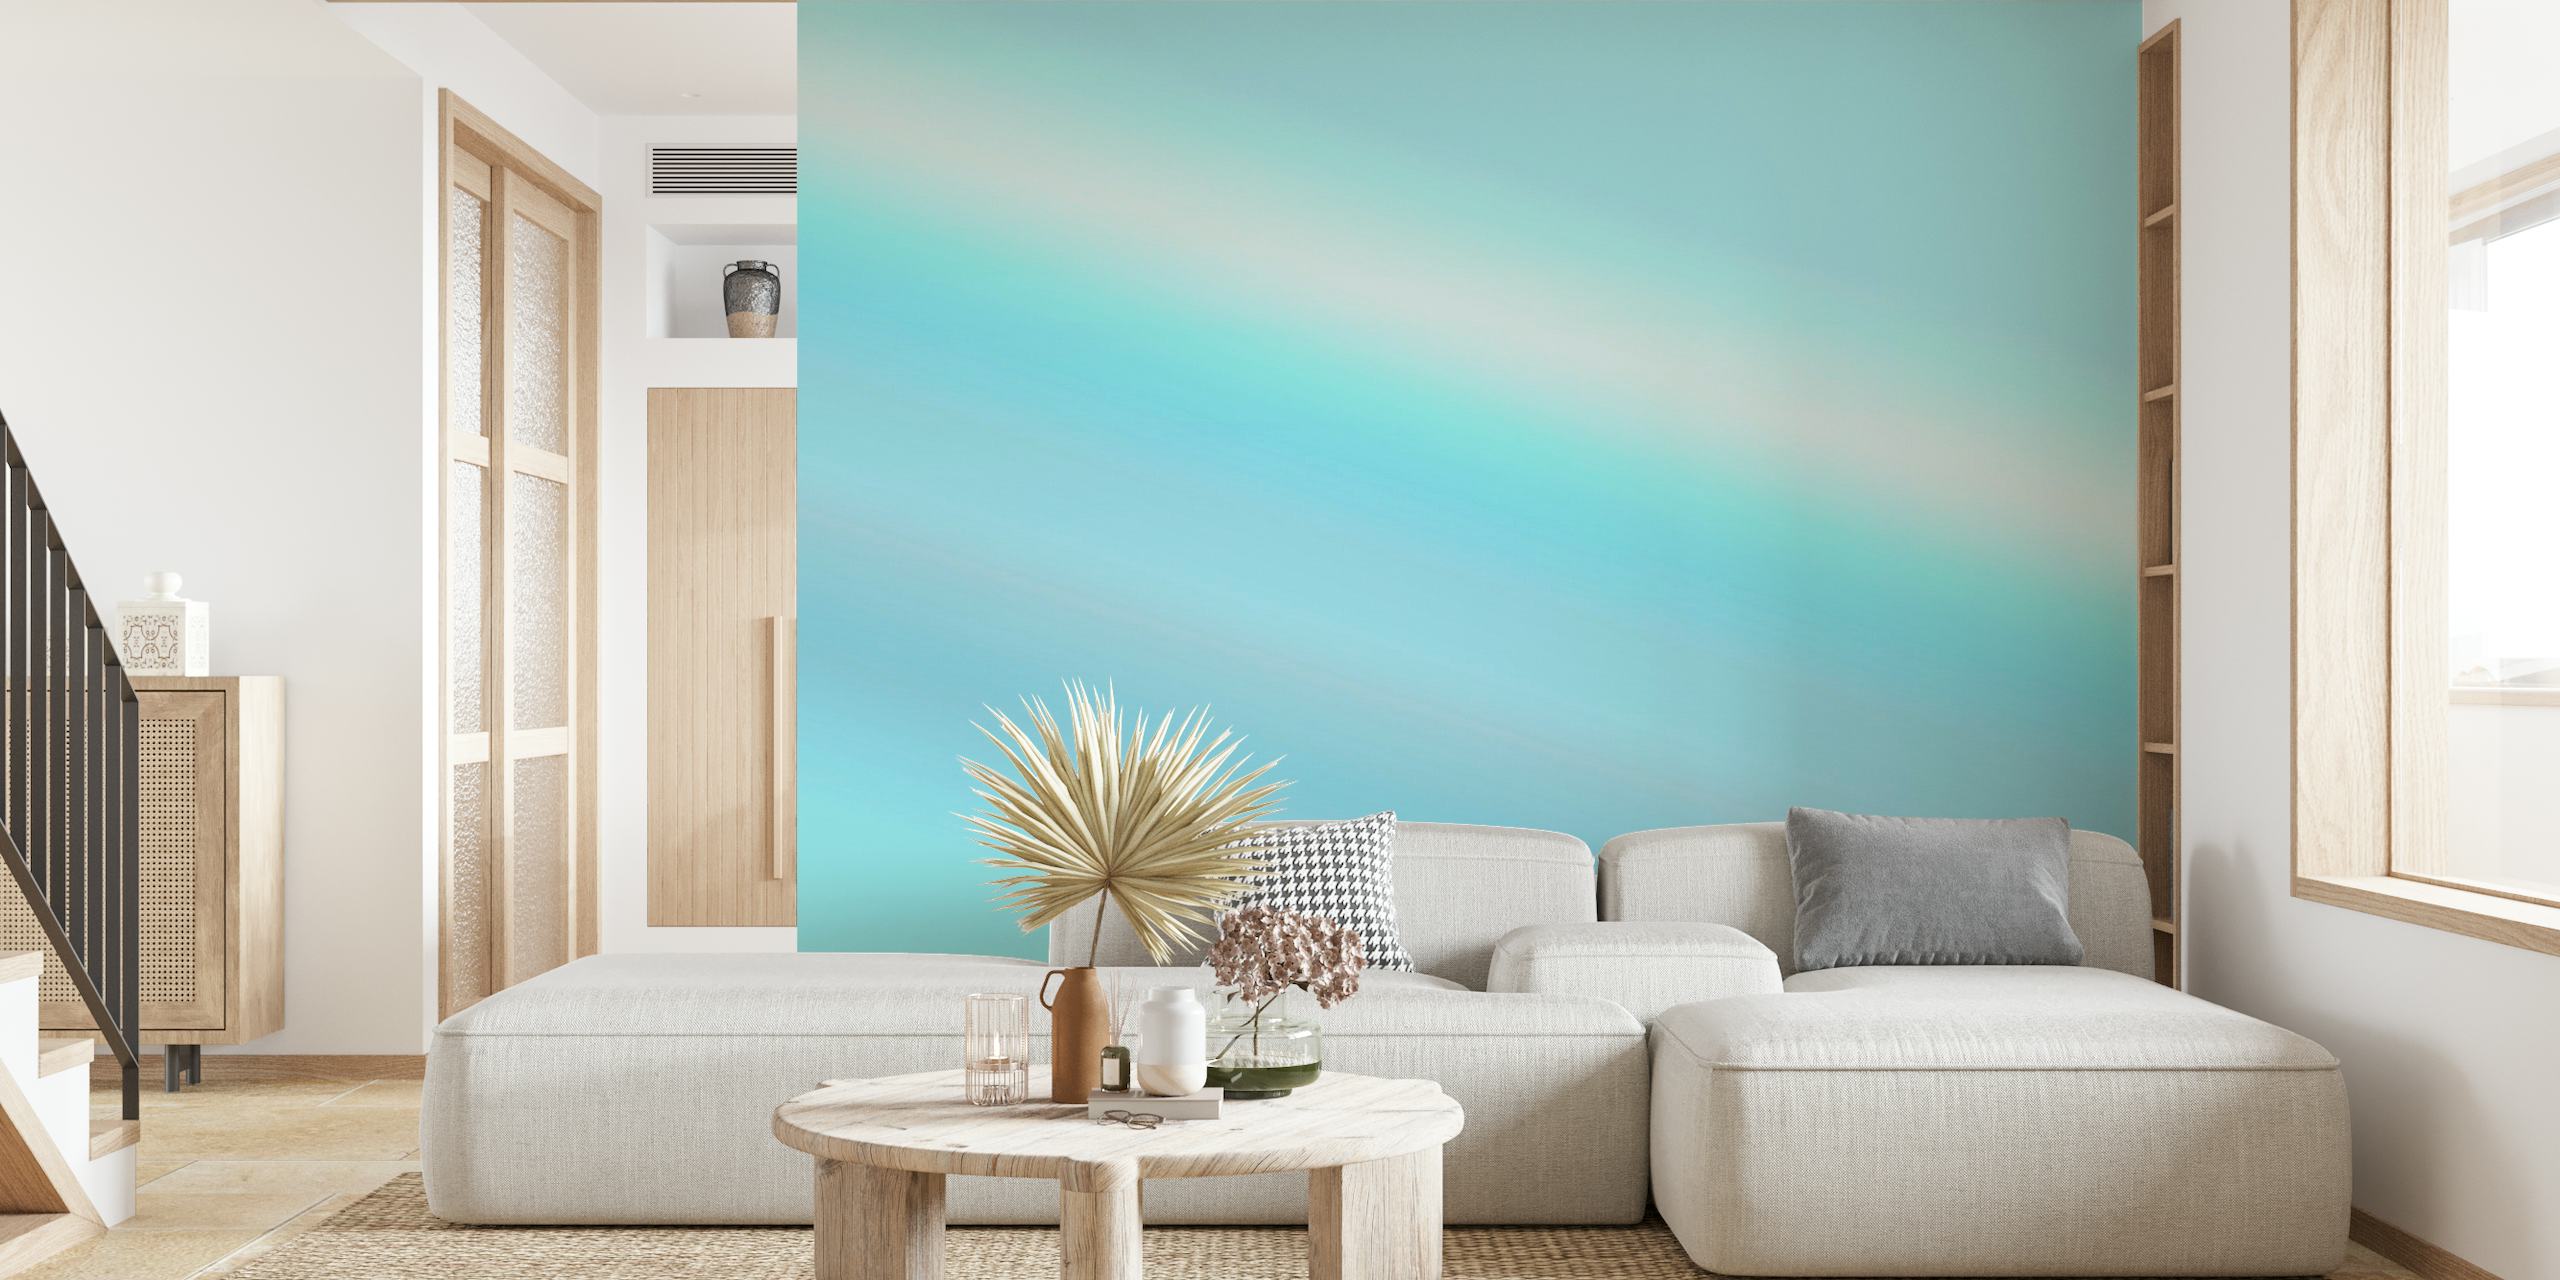 Abstract blauw gradiënt fotobehang dat overgaat van donker naar lichtblauw en een vredige lucht oproept